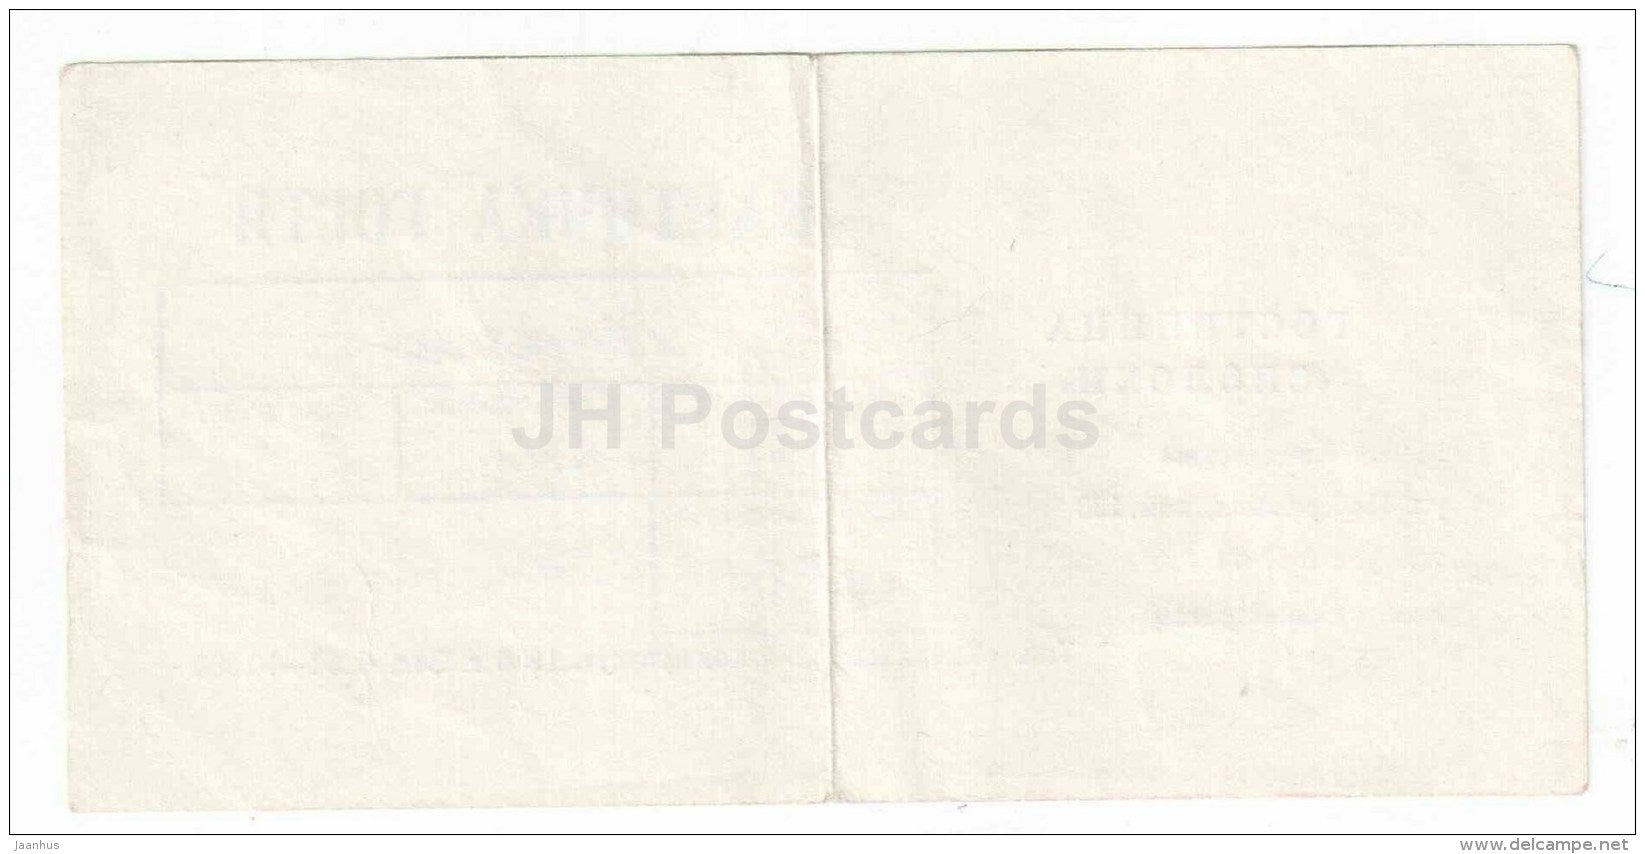 hotel Spolokhi card (ticket) - Kandalaksha - 1986 - Russia USSR - unused - JH Postcards